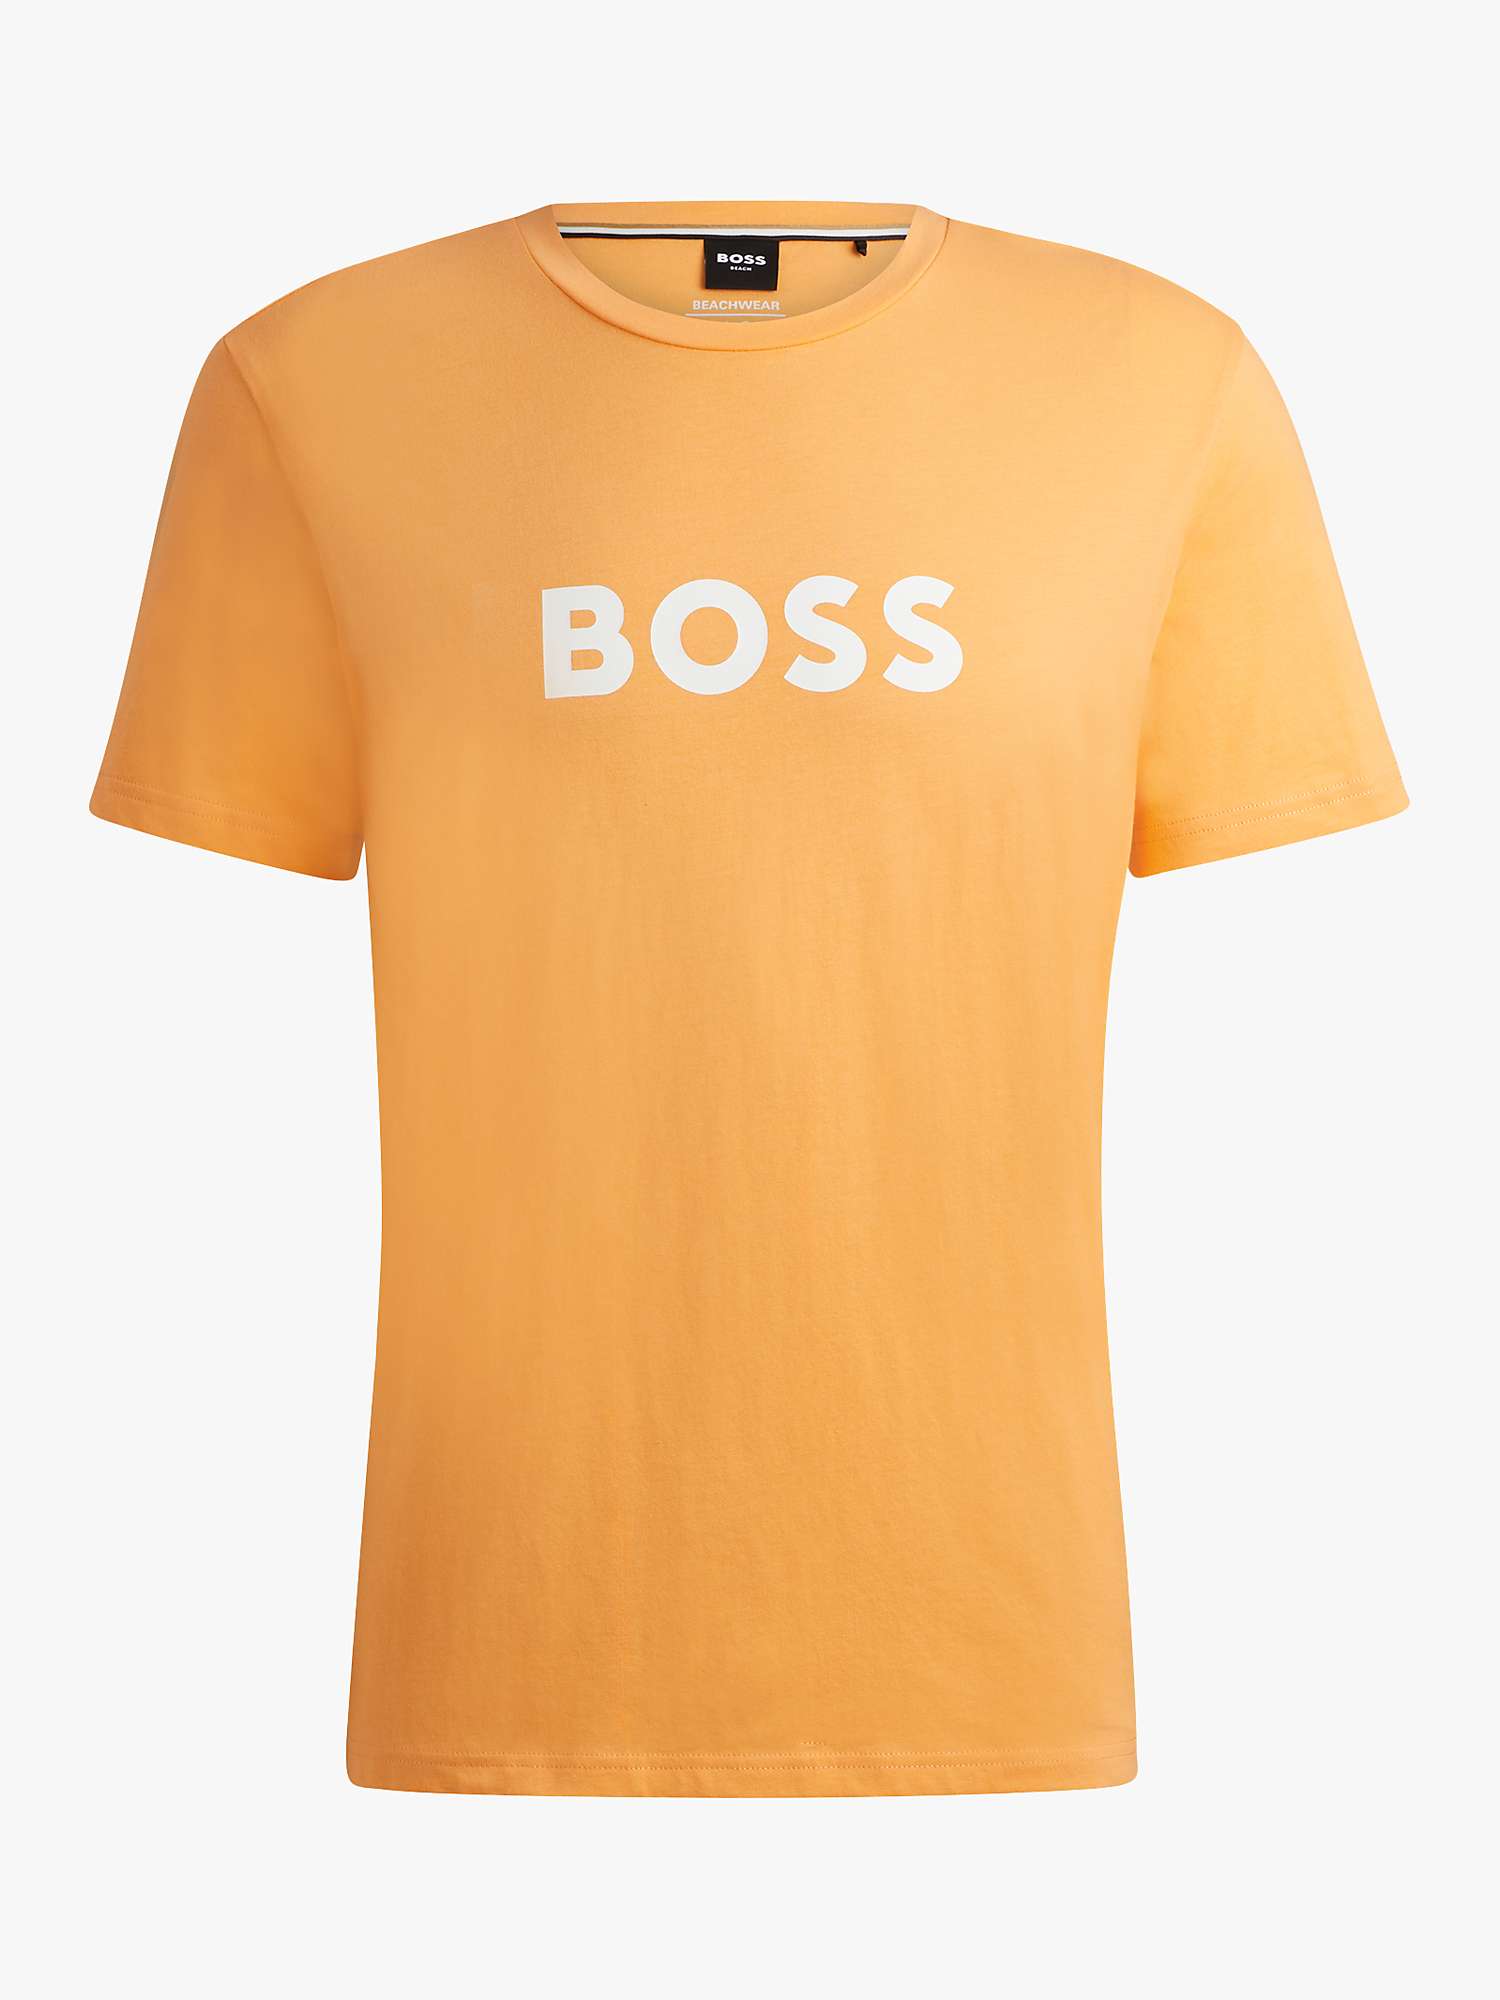 Buy BOSS Large Logo Regular Fit T-Shirt, Medium Orange Online at johnlewis.com